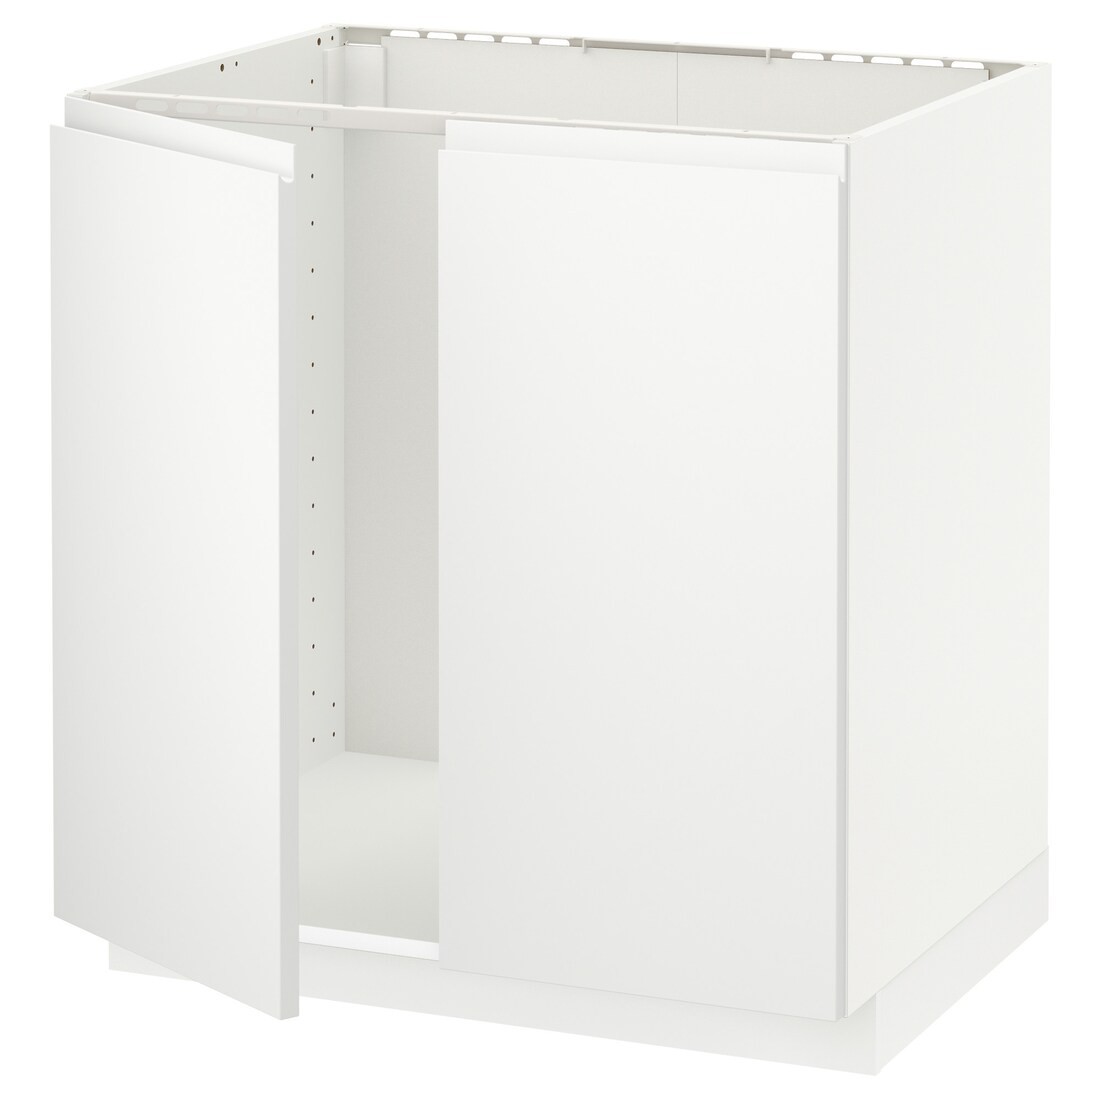 METOD МЕТОД Напольный шкаф для мойки, белый / Voxtorp матовый белый, 80x60 см